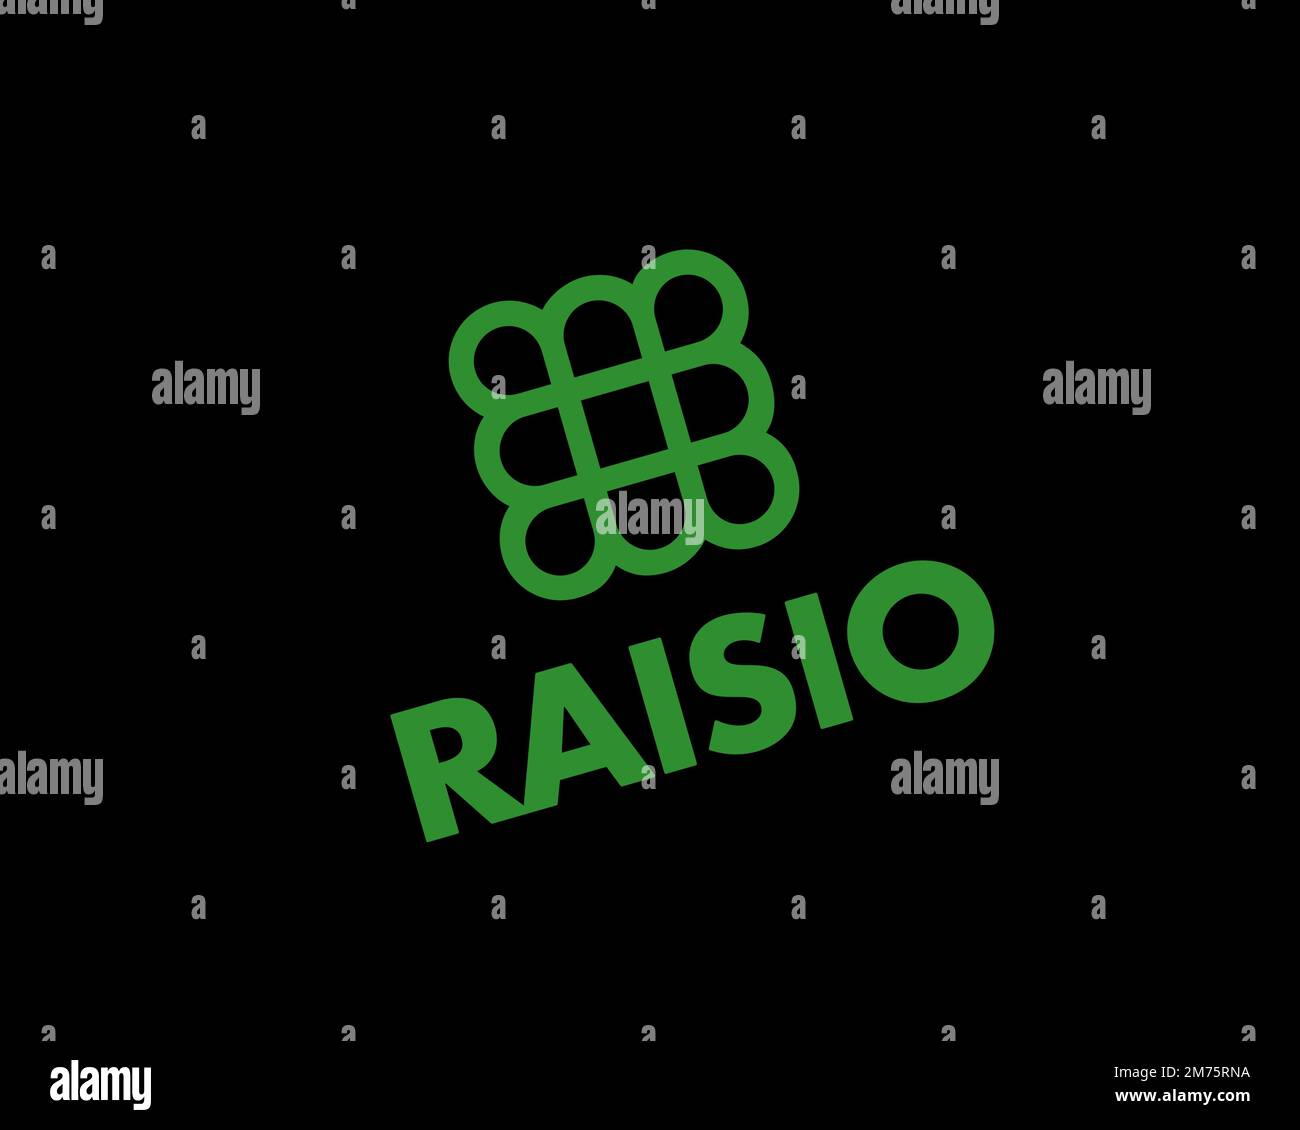 Raisio Group, logo pivoté, arrière-plan noir Banque D'Images